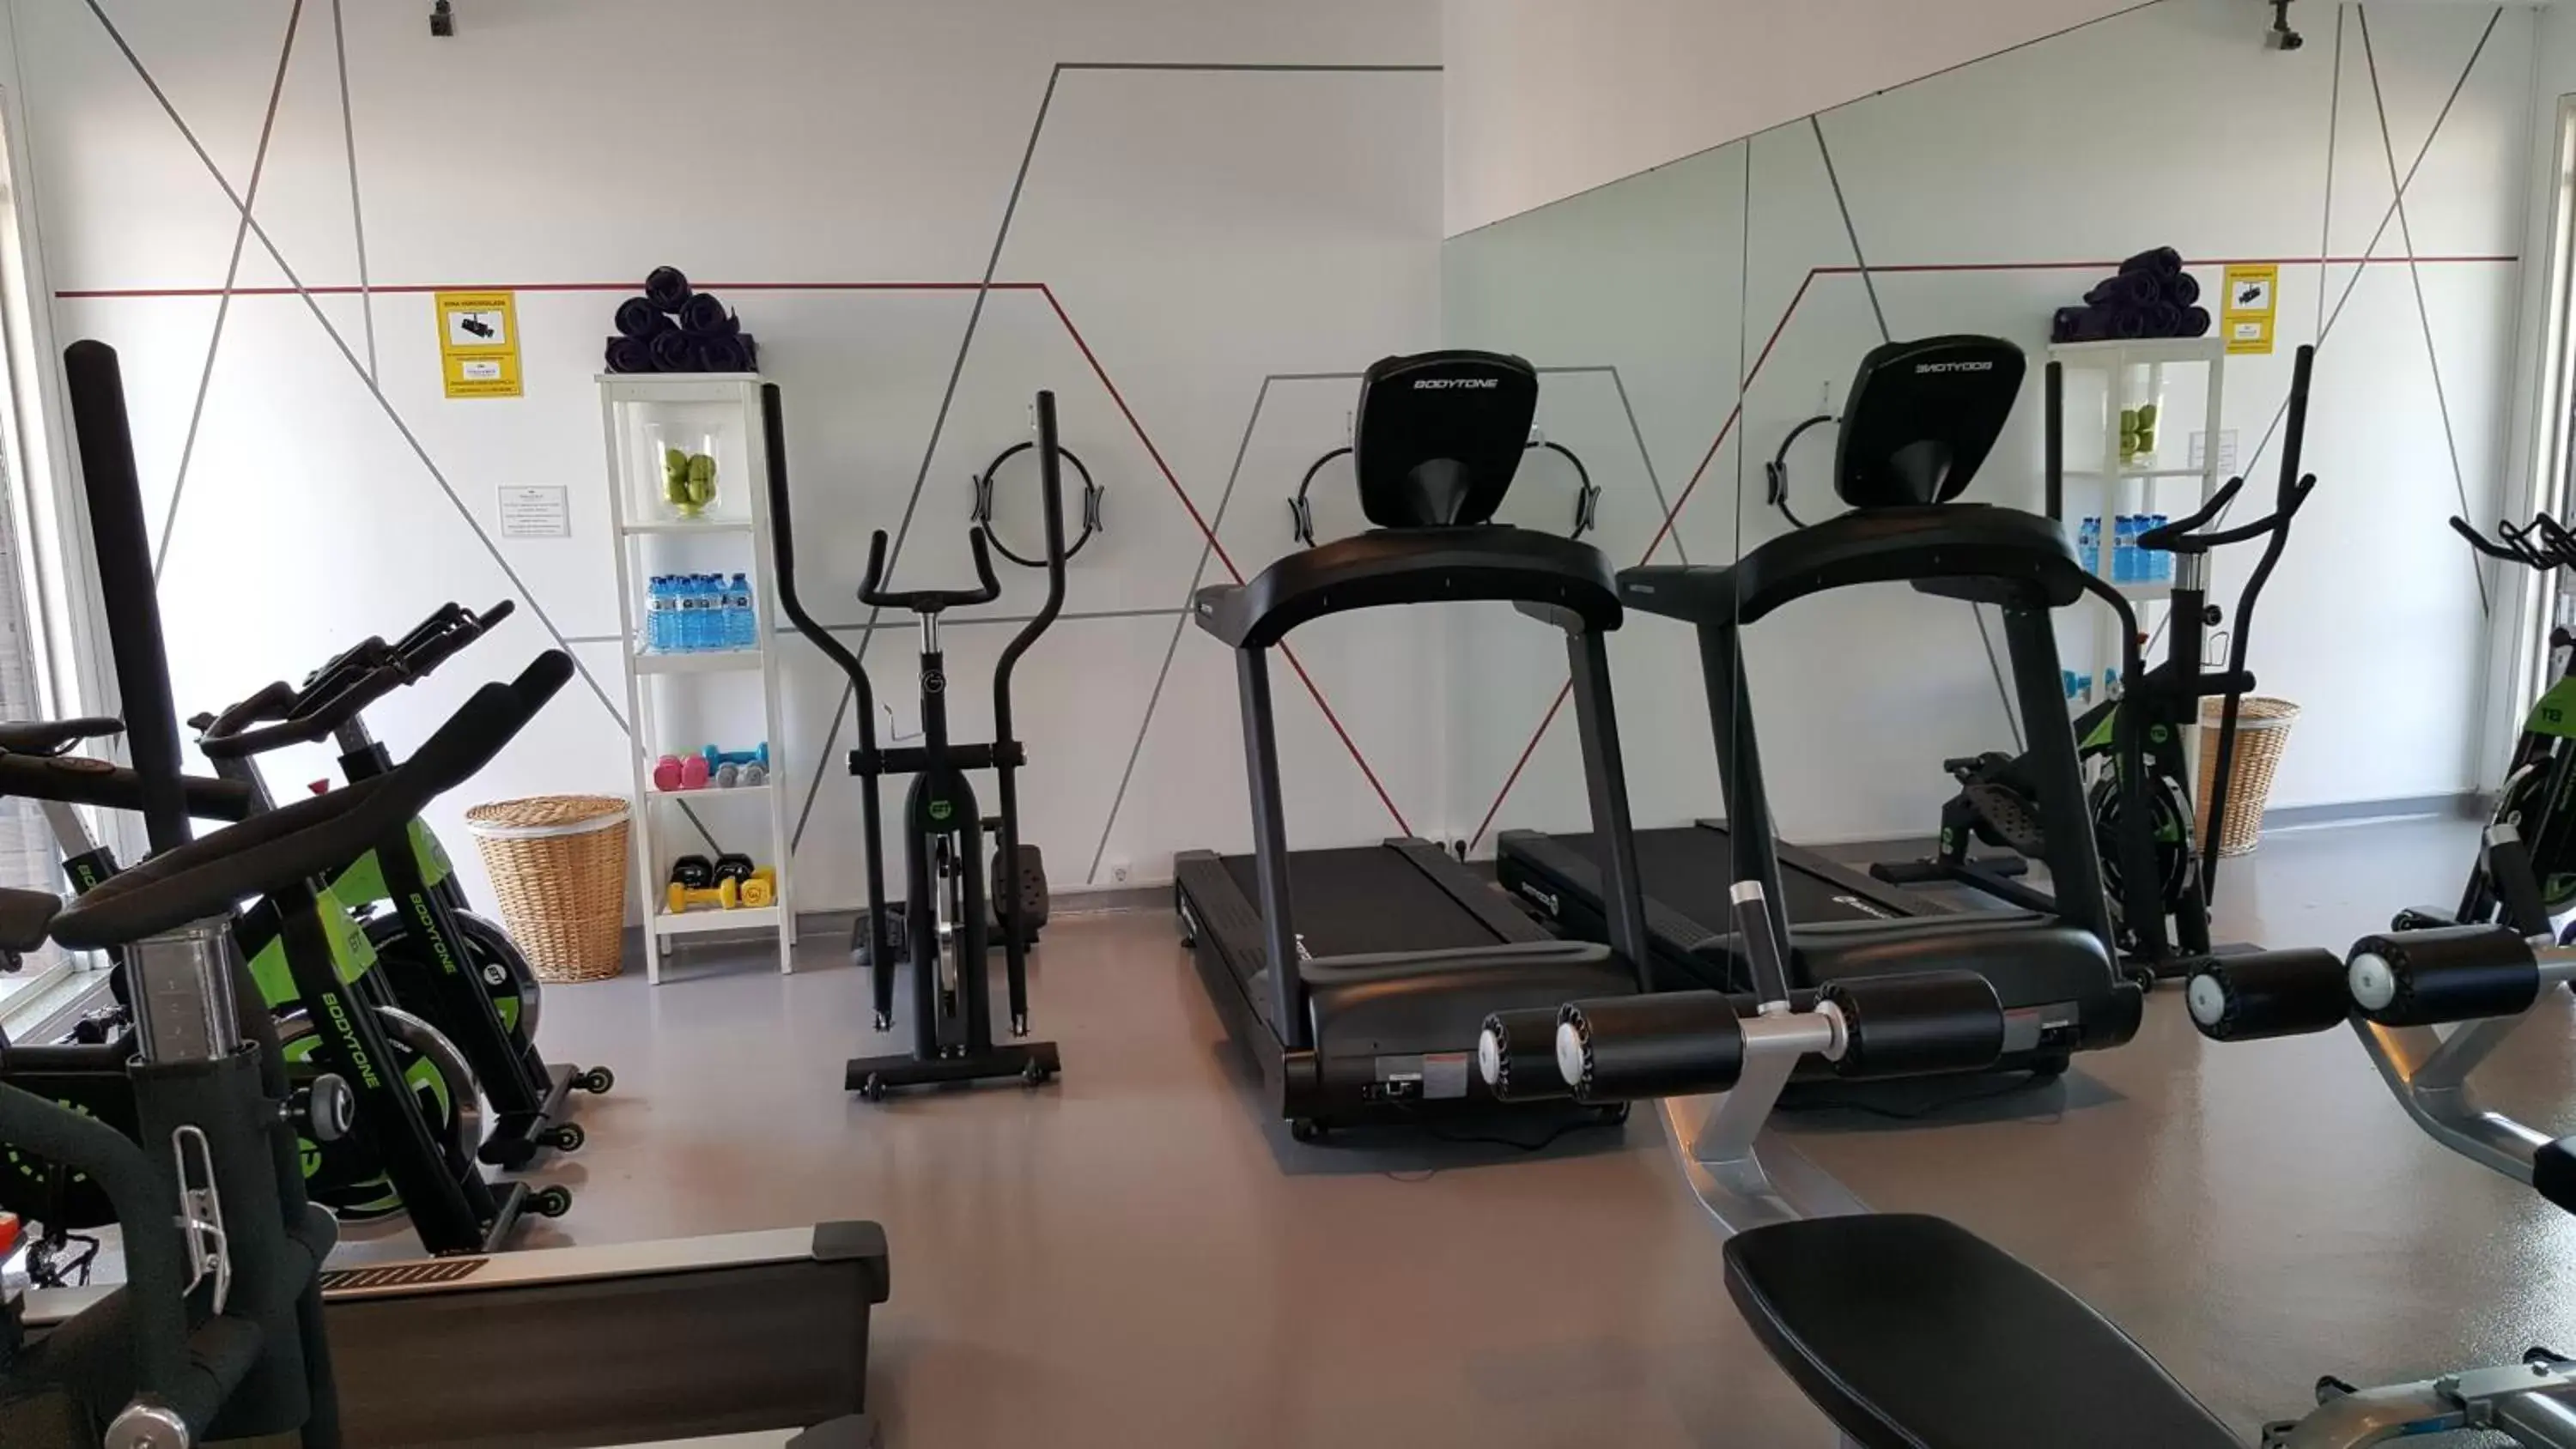 Fitness centre/facilities, Fitness Center/Facilities in Parador de Cádiz